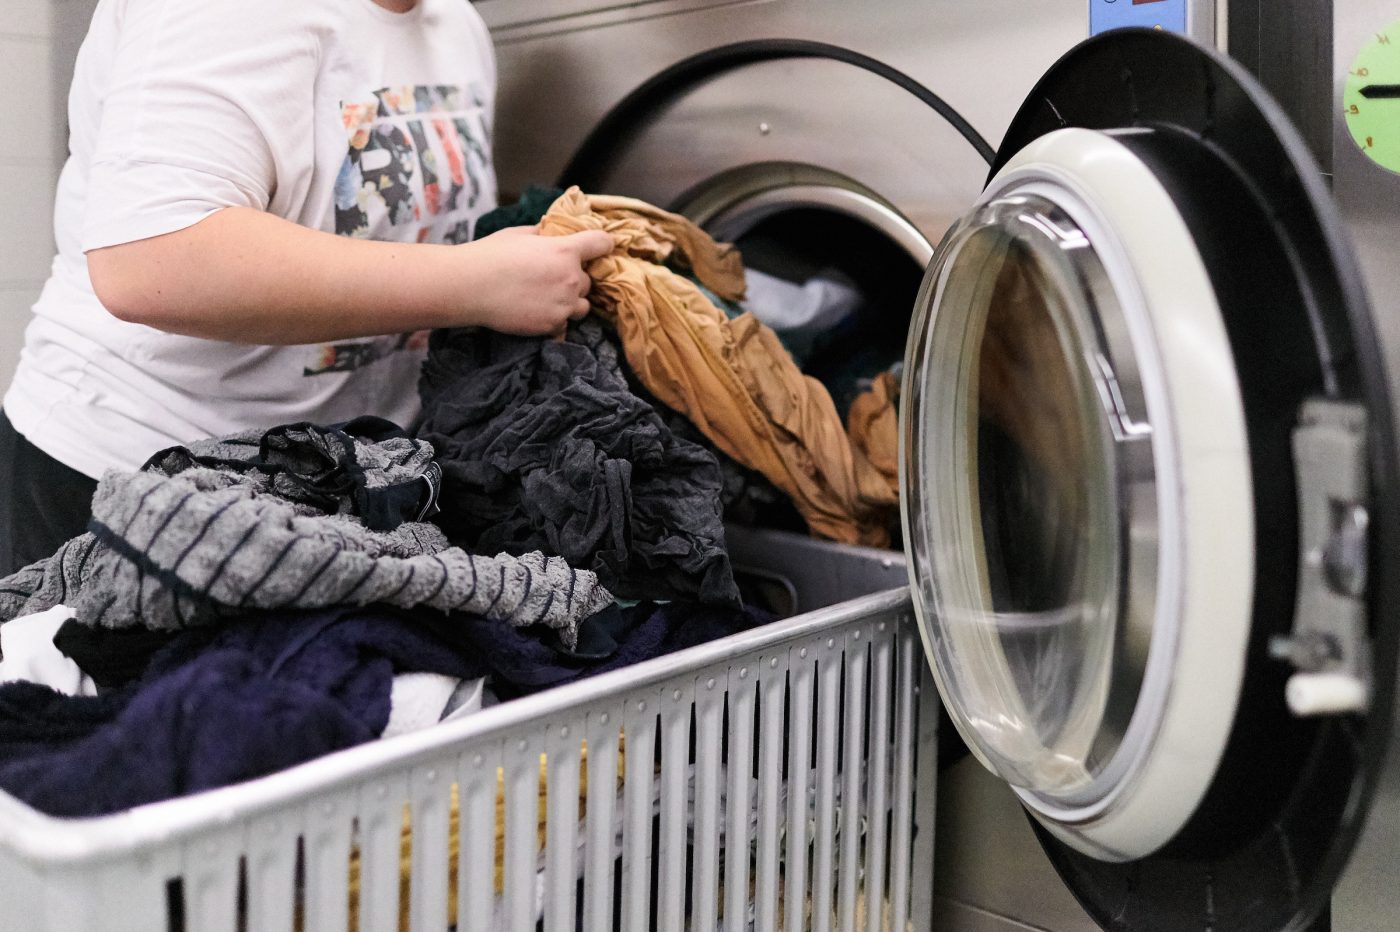 Frisch gewaschene Kleider werden aus der grossen Industriewaschmaschine gerade in den davorstehenden Wäschewagen gehoben